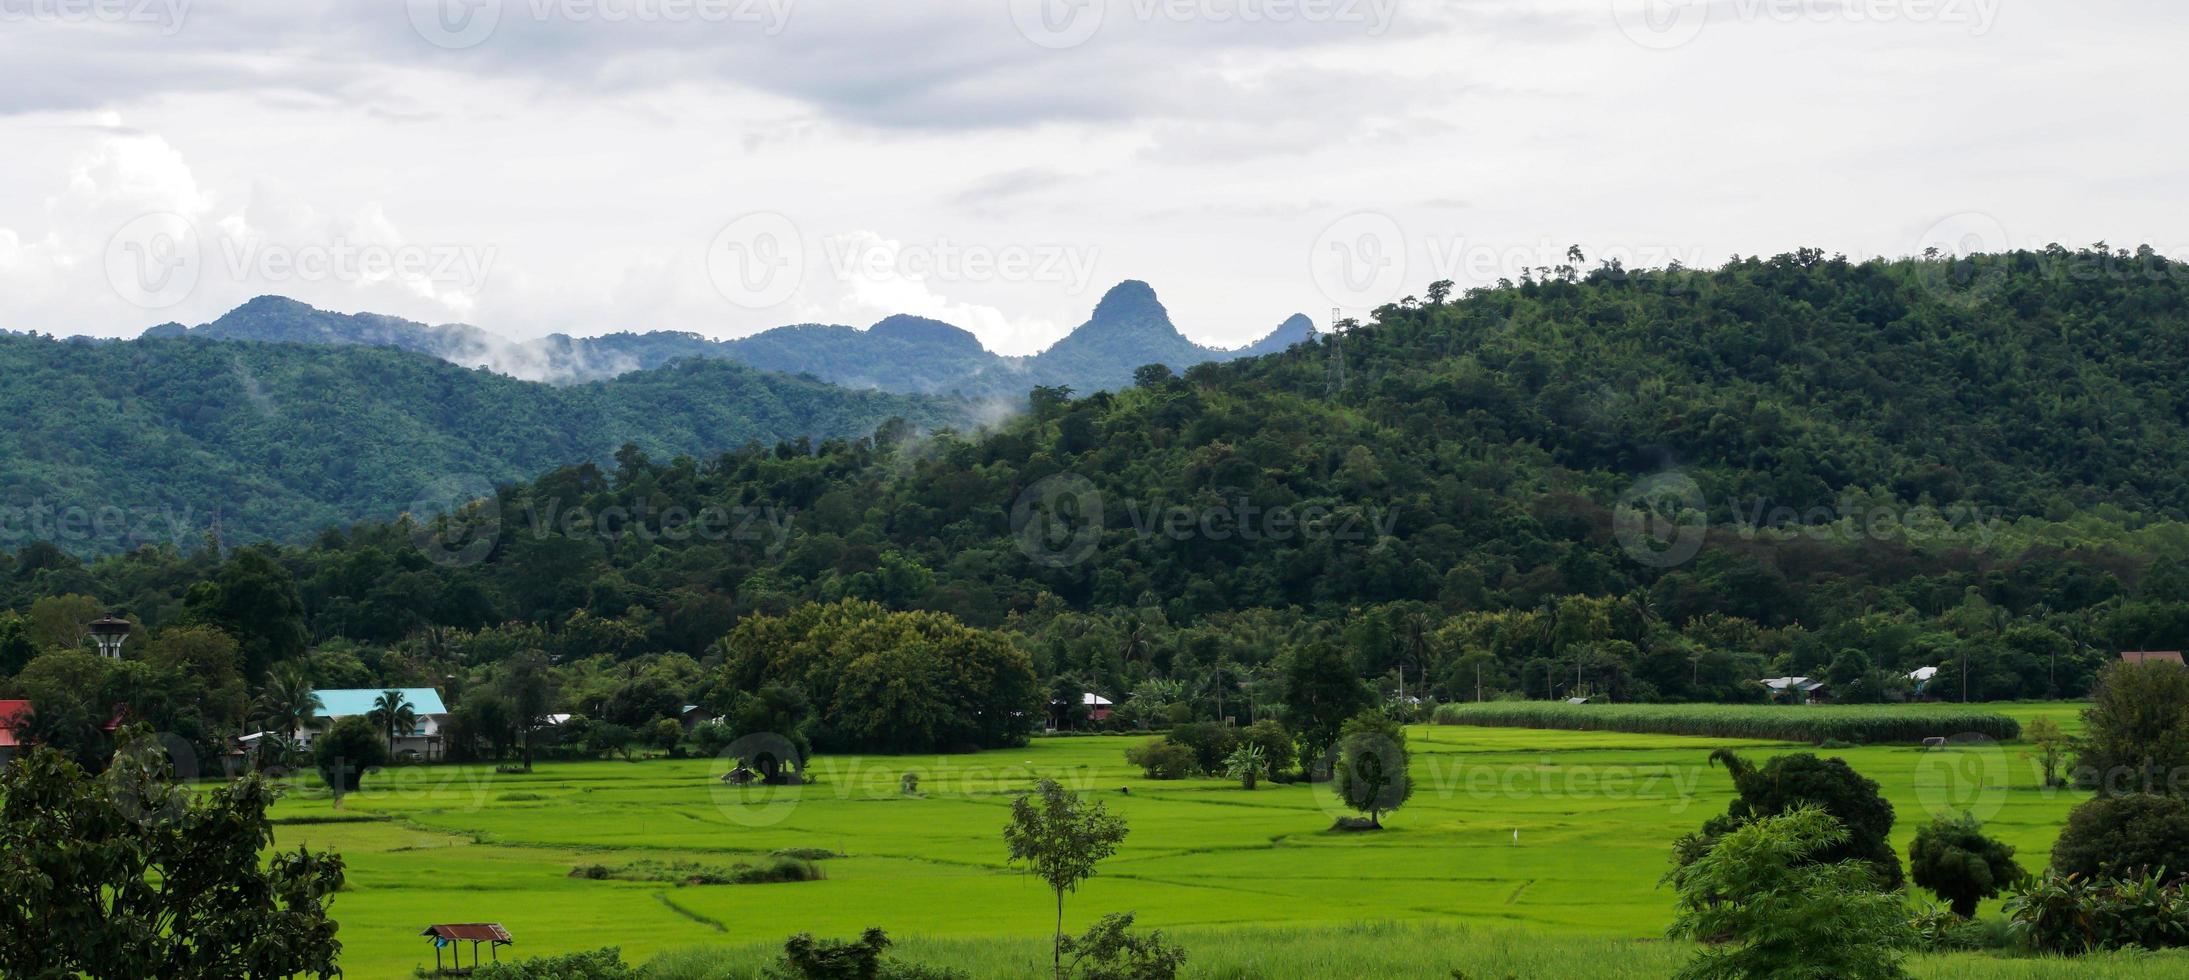 rizière verte avec fond de montagne sous un ciel nuageux après la pluie en saison des pluies, rizière à vue panoramique. photo